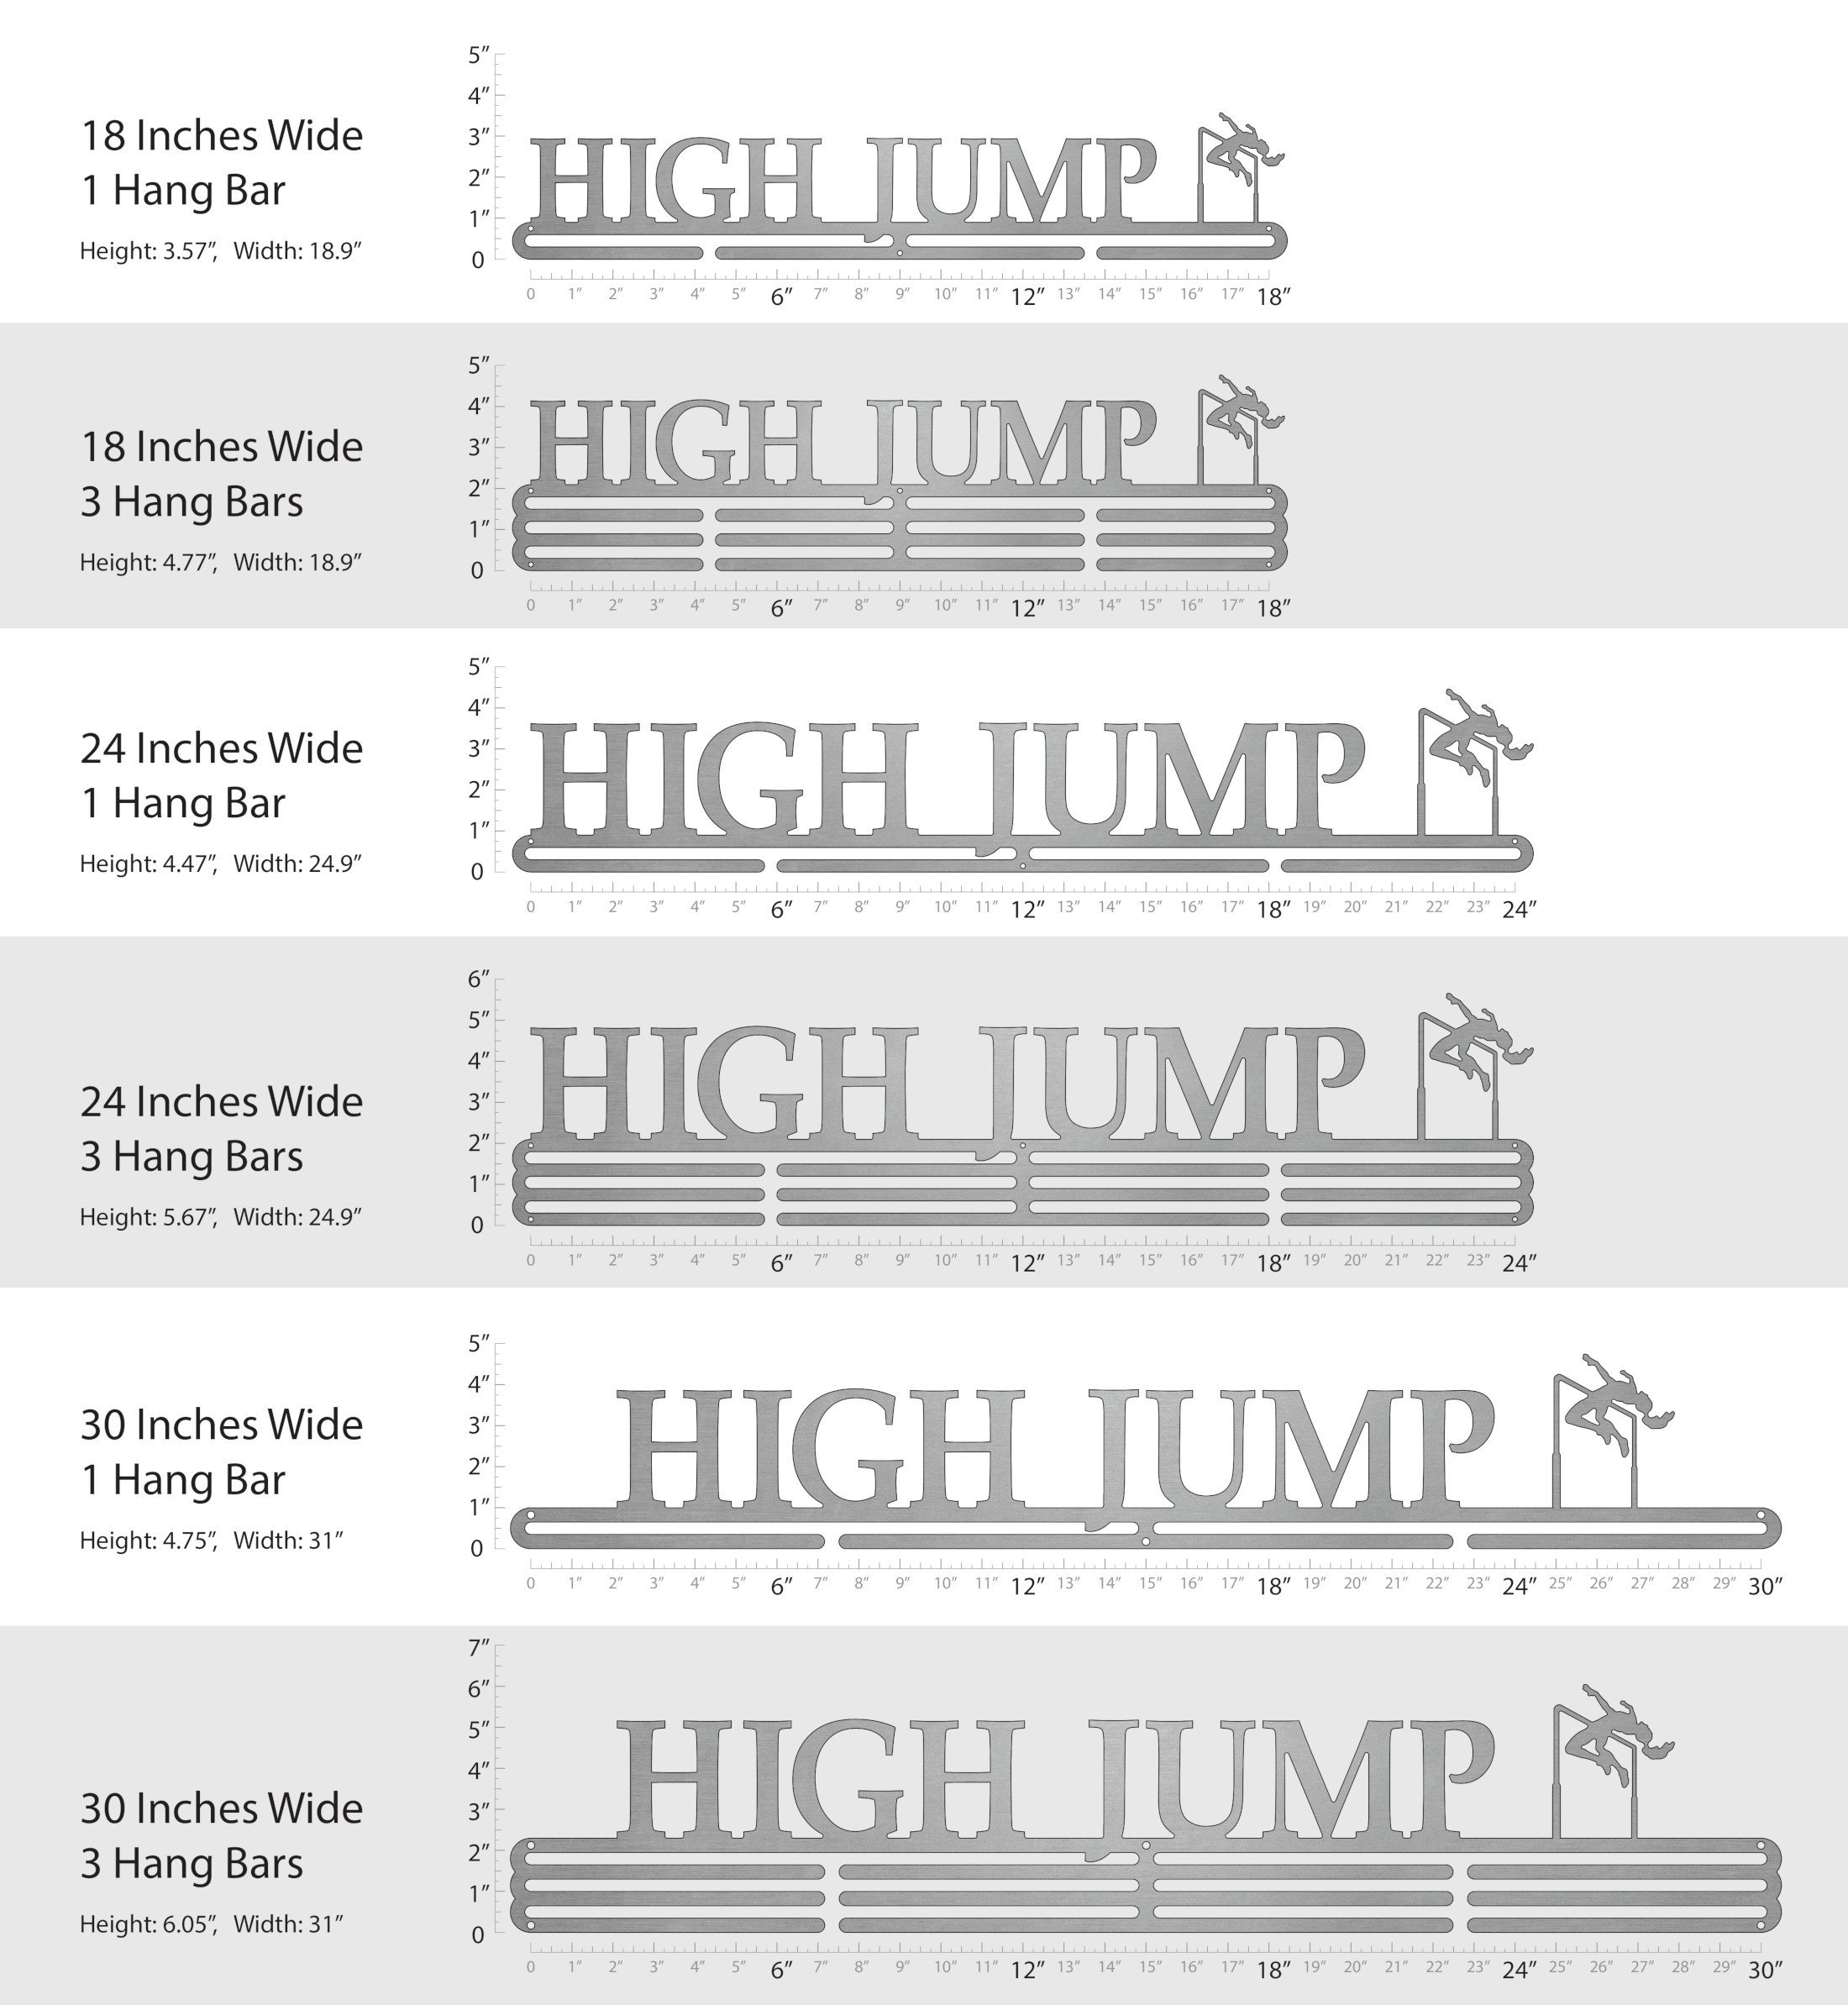 High Jump - Female